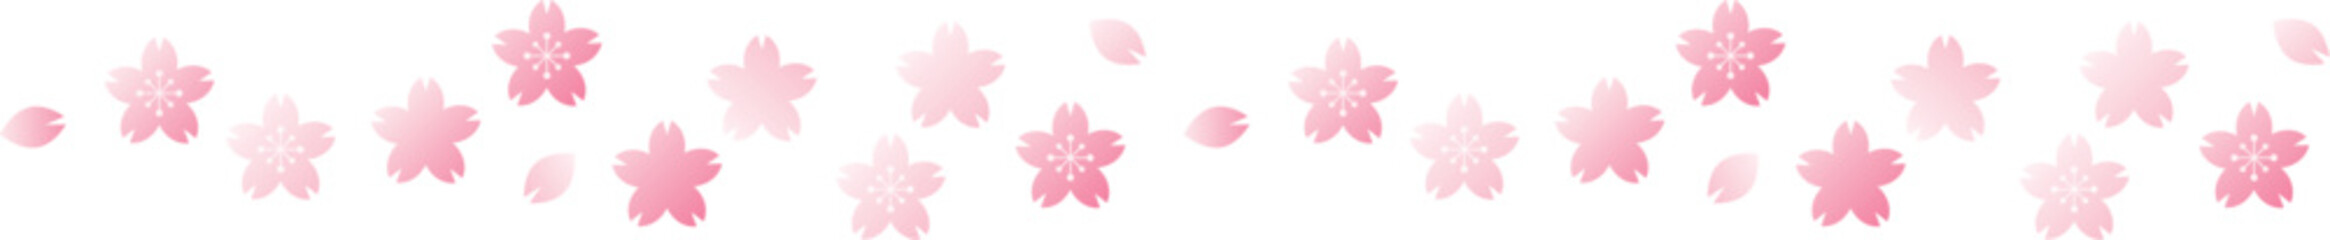 舞い散る桜のラインイラスト